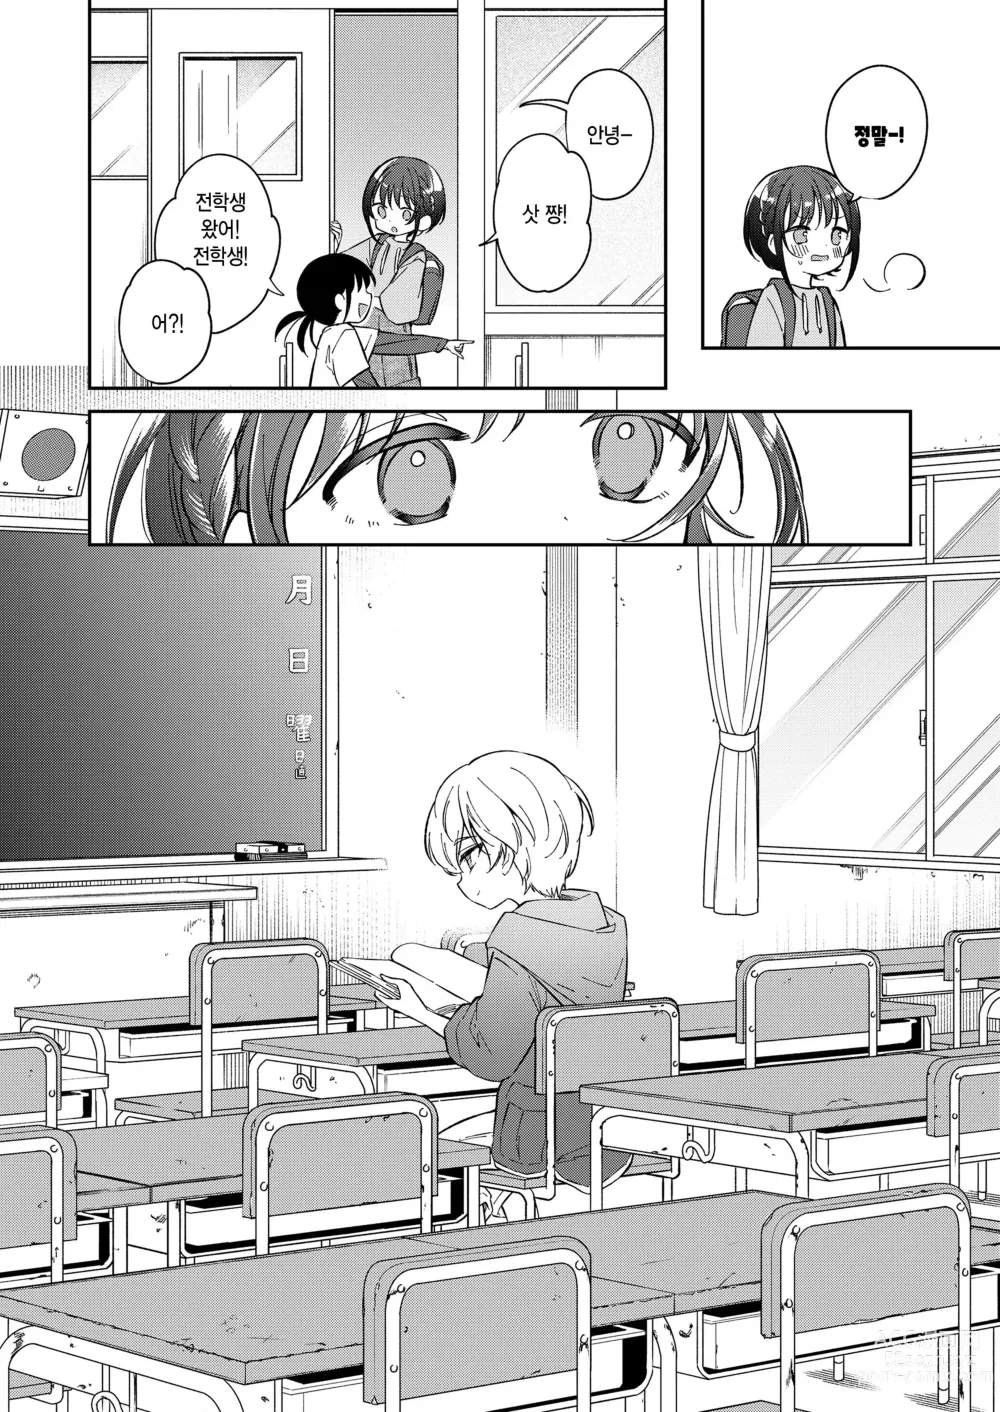 Page 4 of manga Watashi ga iki wo shiteru basho